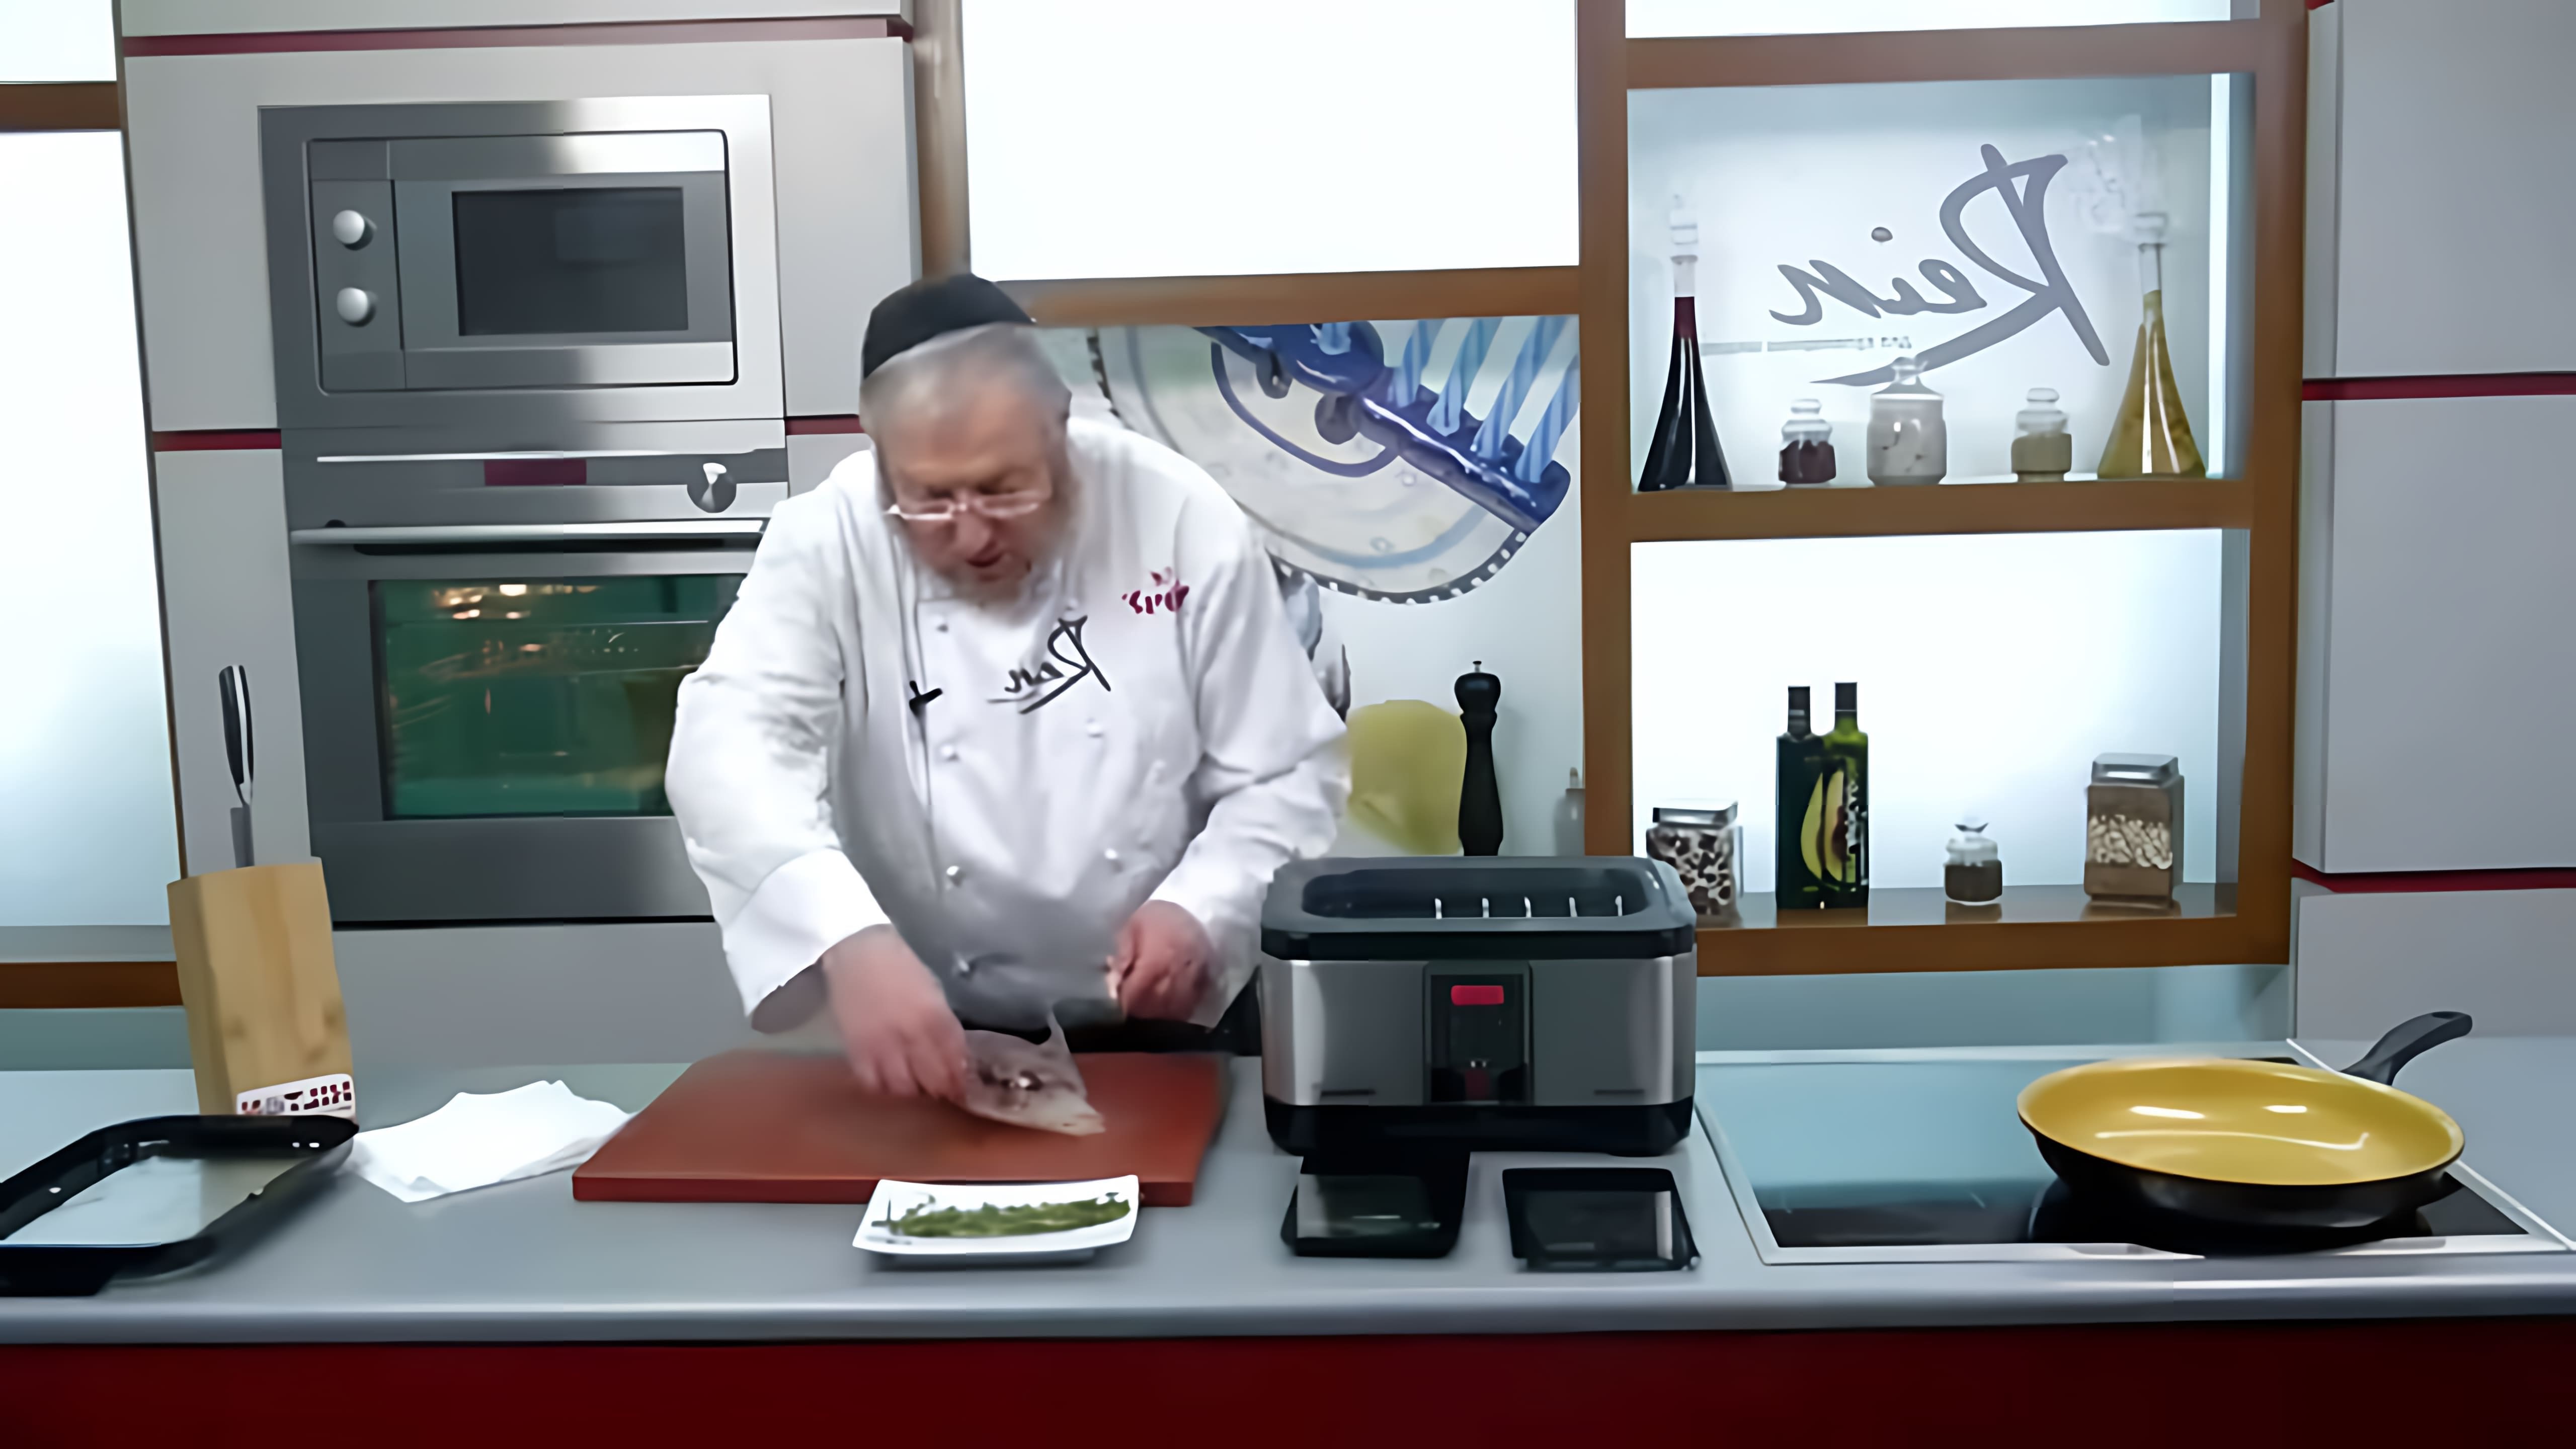 В этом видео демонстрируется рецепт приготовления стейка в вакууме, который называется "Голодный стейк"